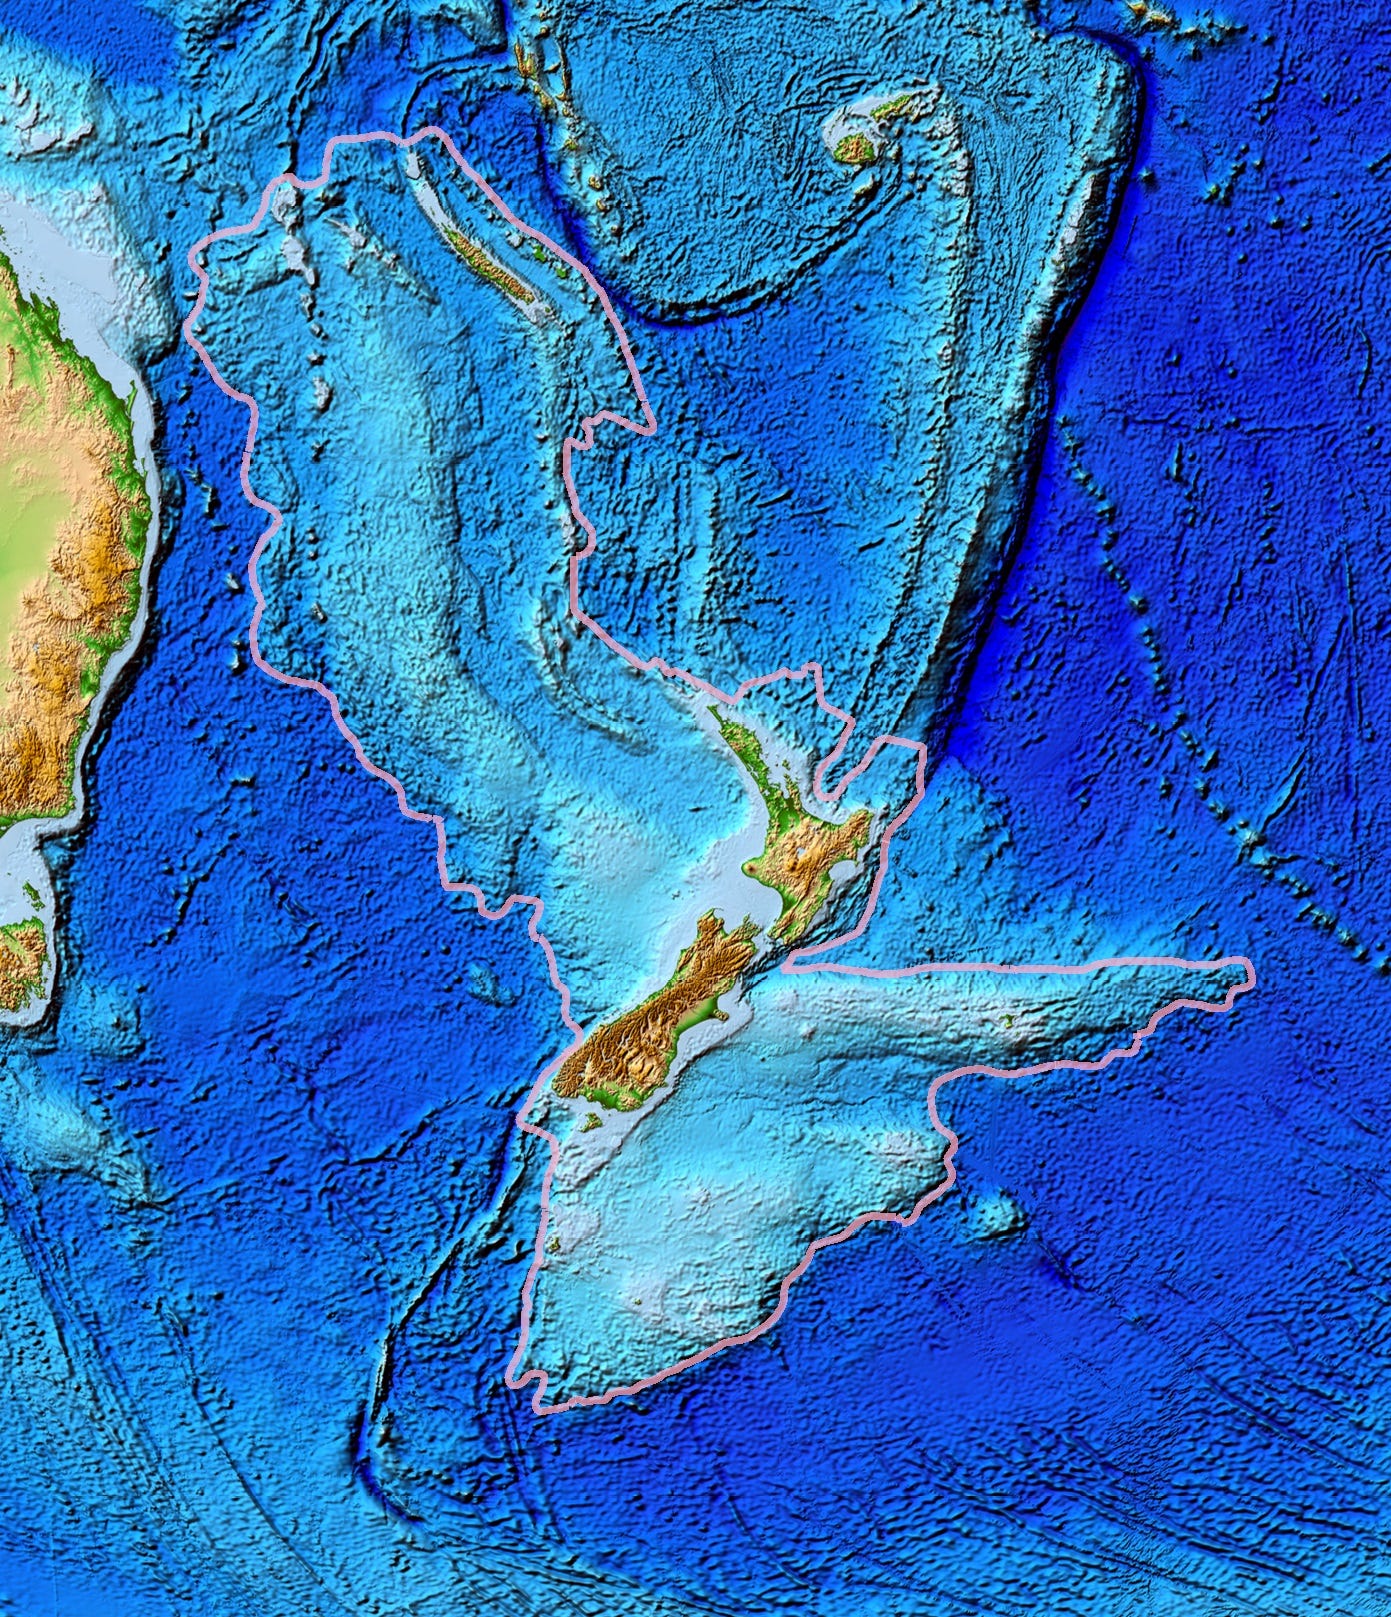 continente extinto da nova zelândia